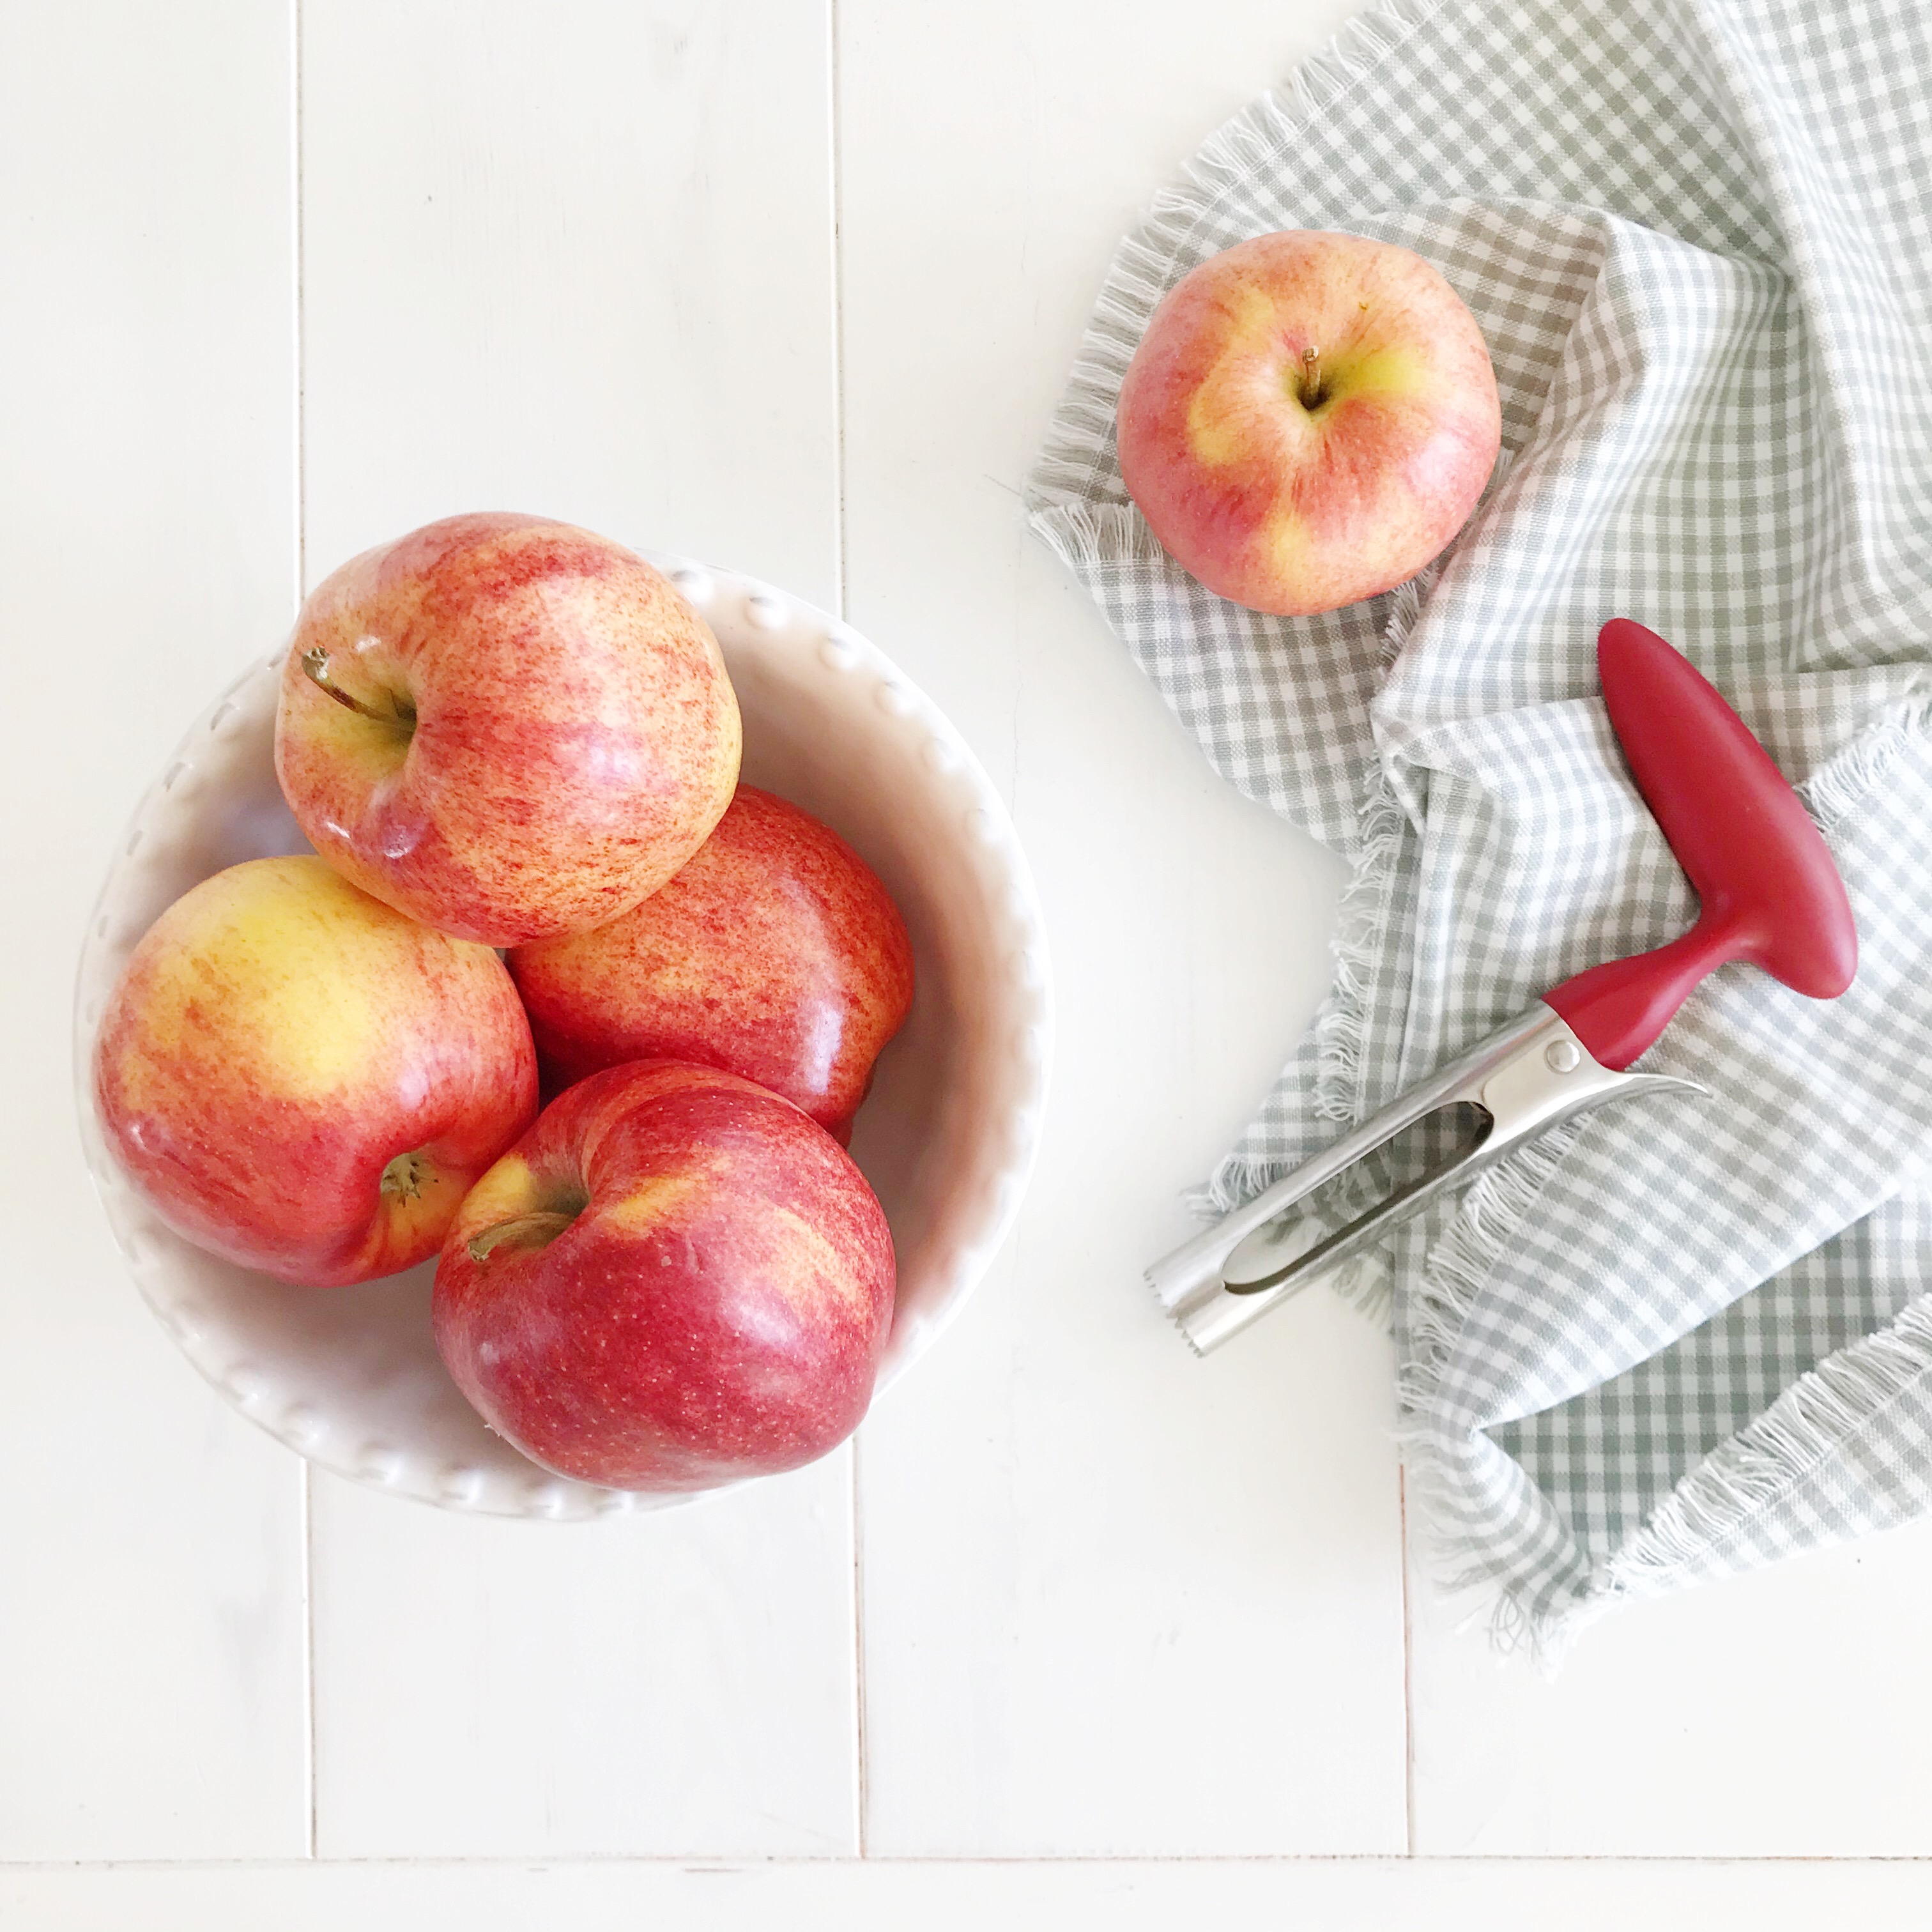 Schüssel mit roten Äpfeln mit einem Apfelentkerner